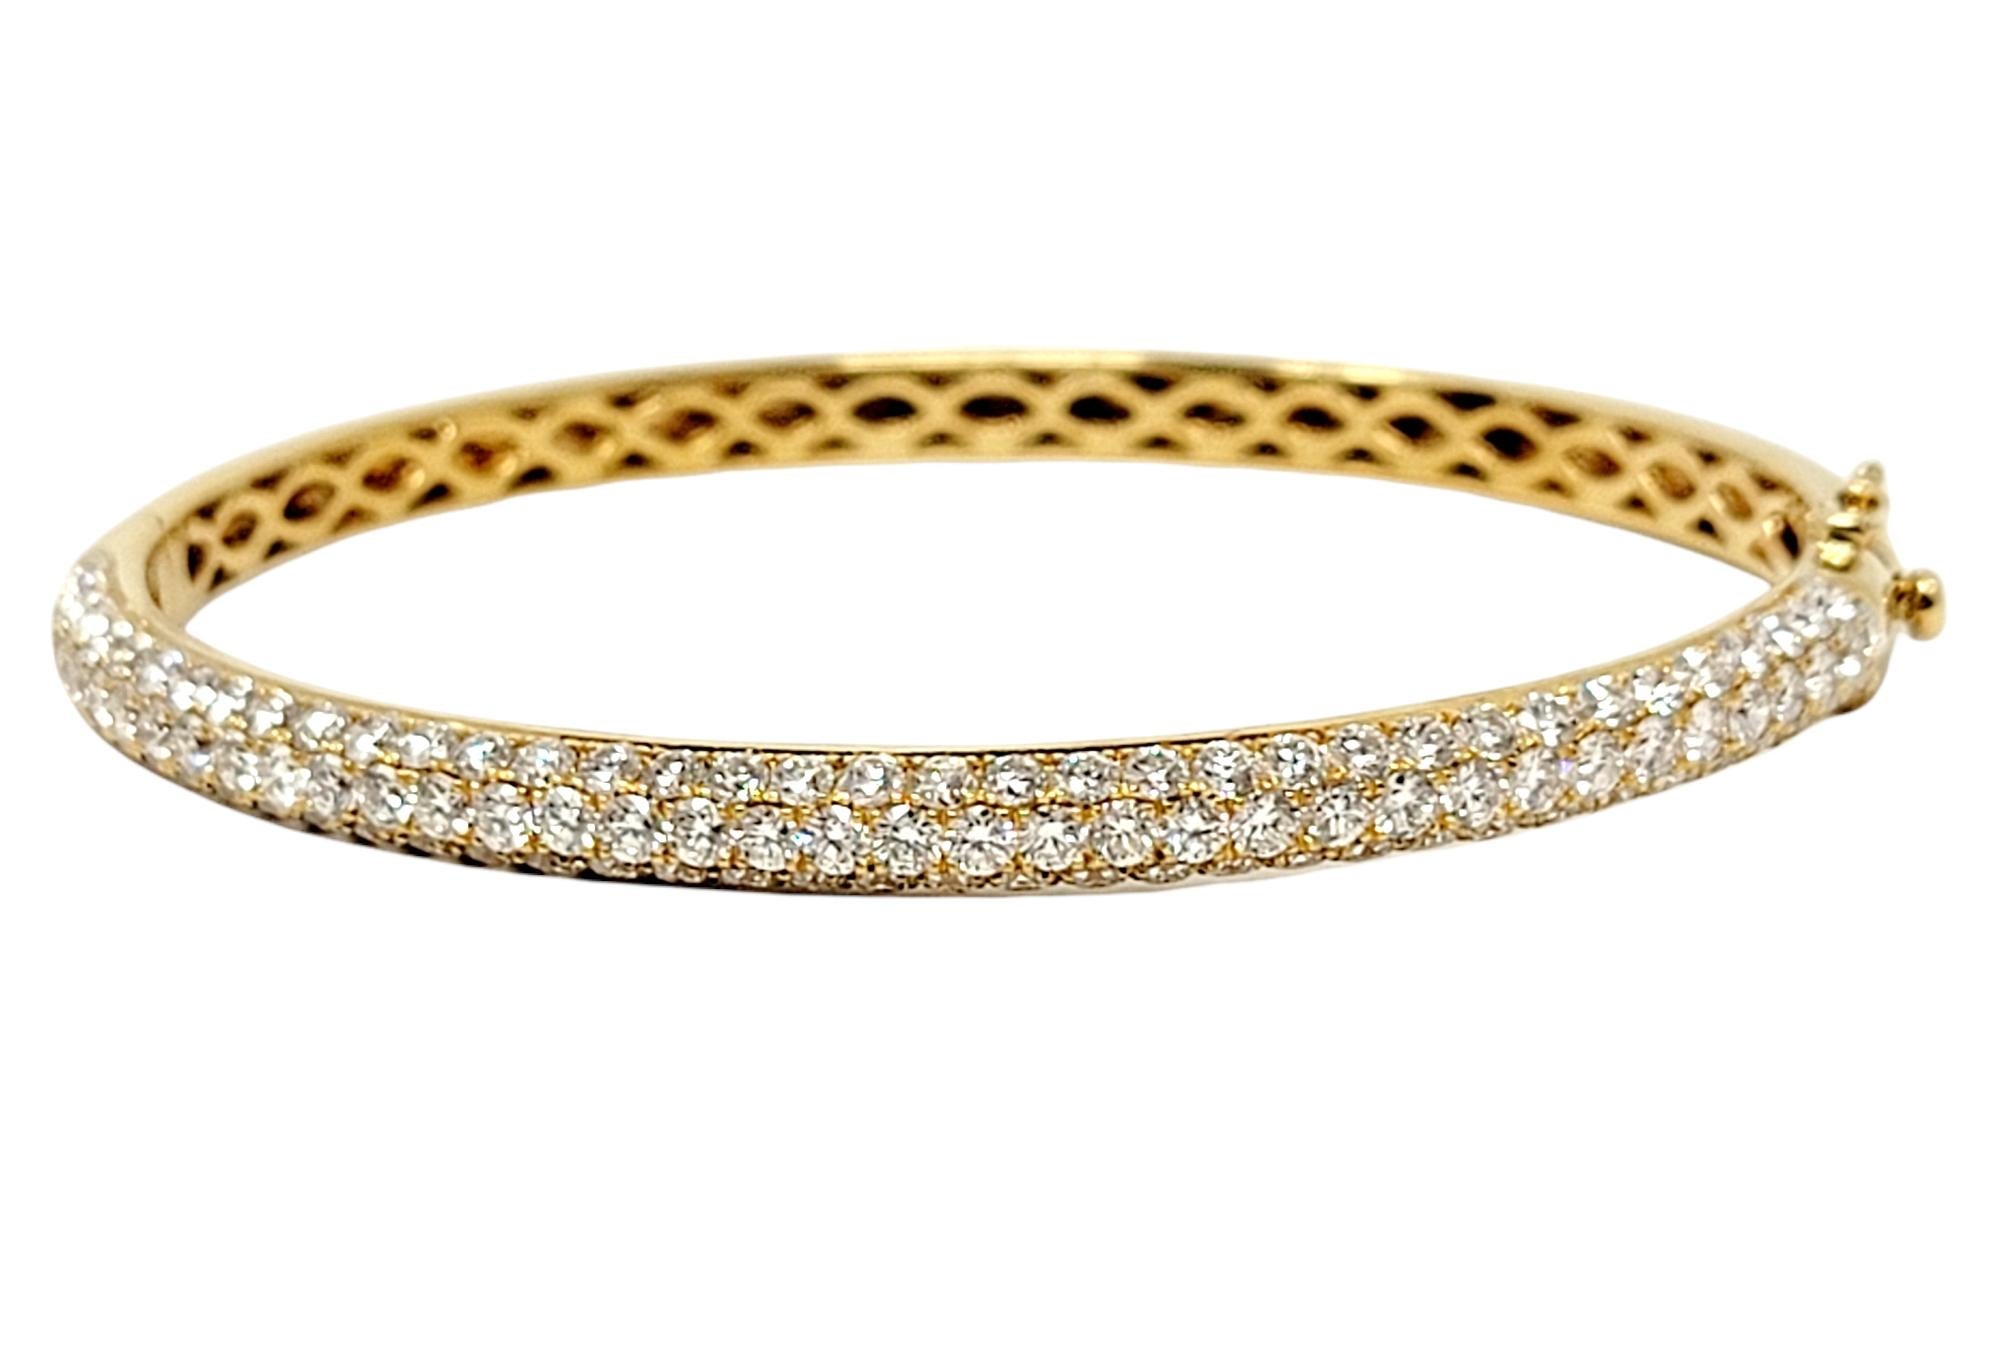 Bracelet bangle en diamants pavés absolument magnifique, réalisé par Oliver Smith Jeweler. Le design moderne et épuré brille sous tous les angles grâce aux diamants naturels d'un blanc glacé époustouflant. Cette pièce incroyable peut être empilée